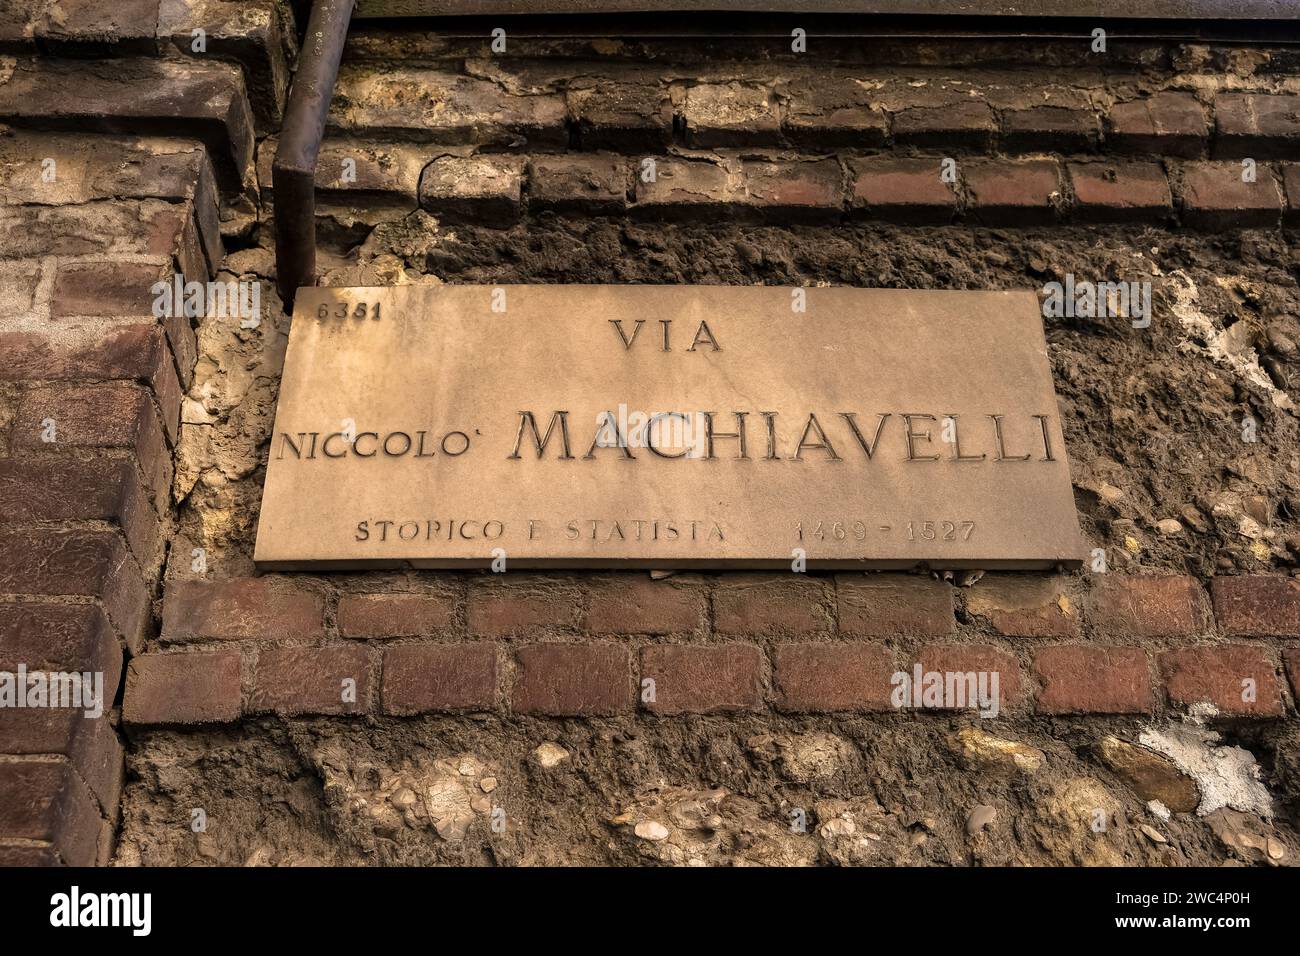 Indicazioni stradali per via Niccolo Machiavelli nel centro di Milano, Italia settentrionale. Foto Stock